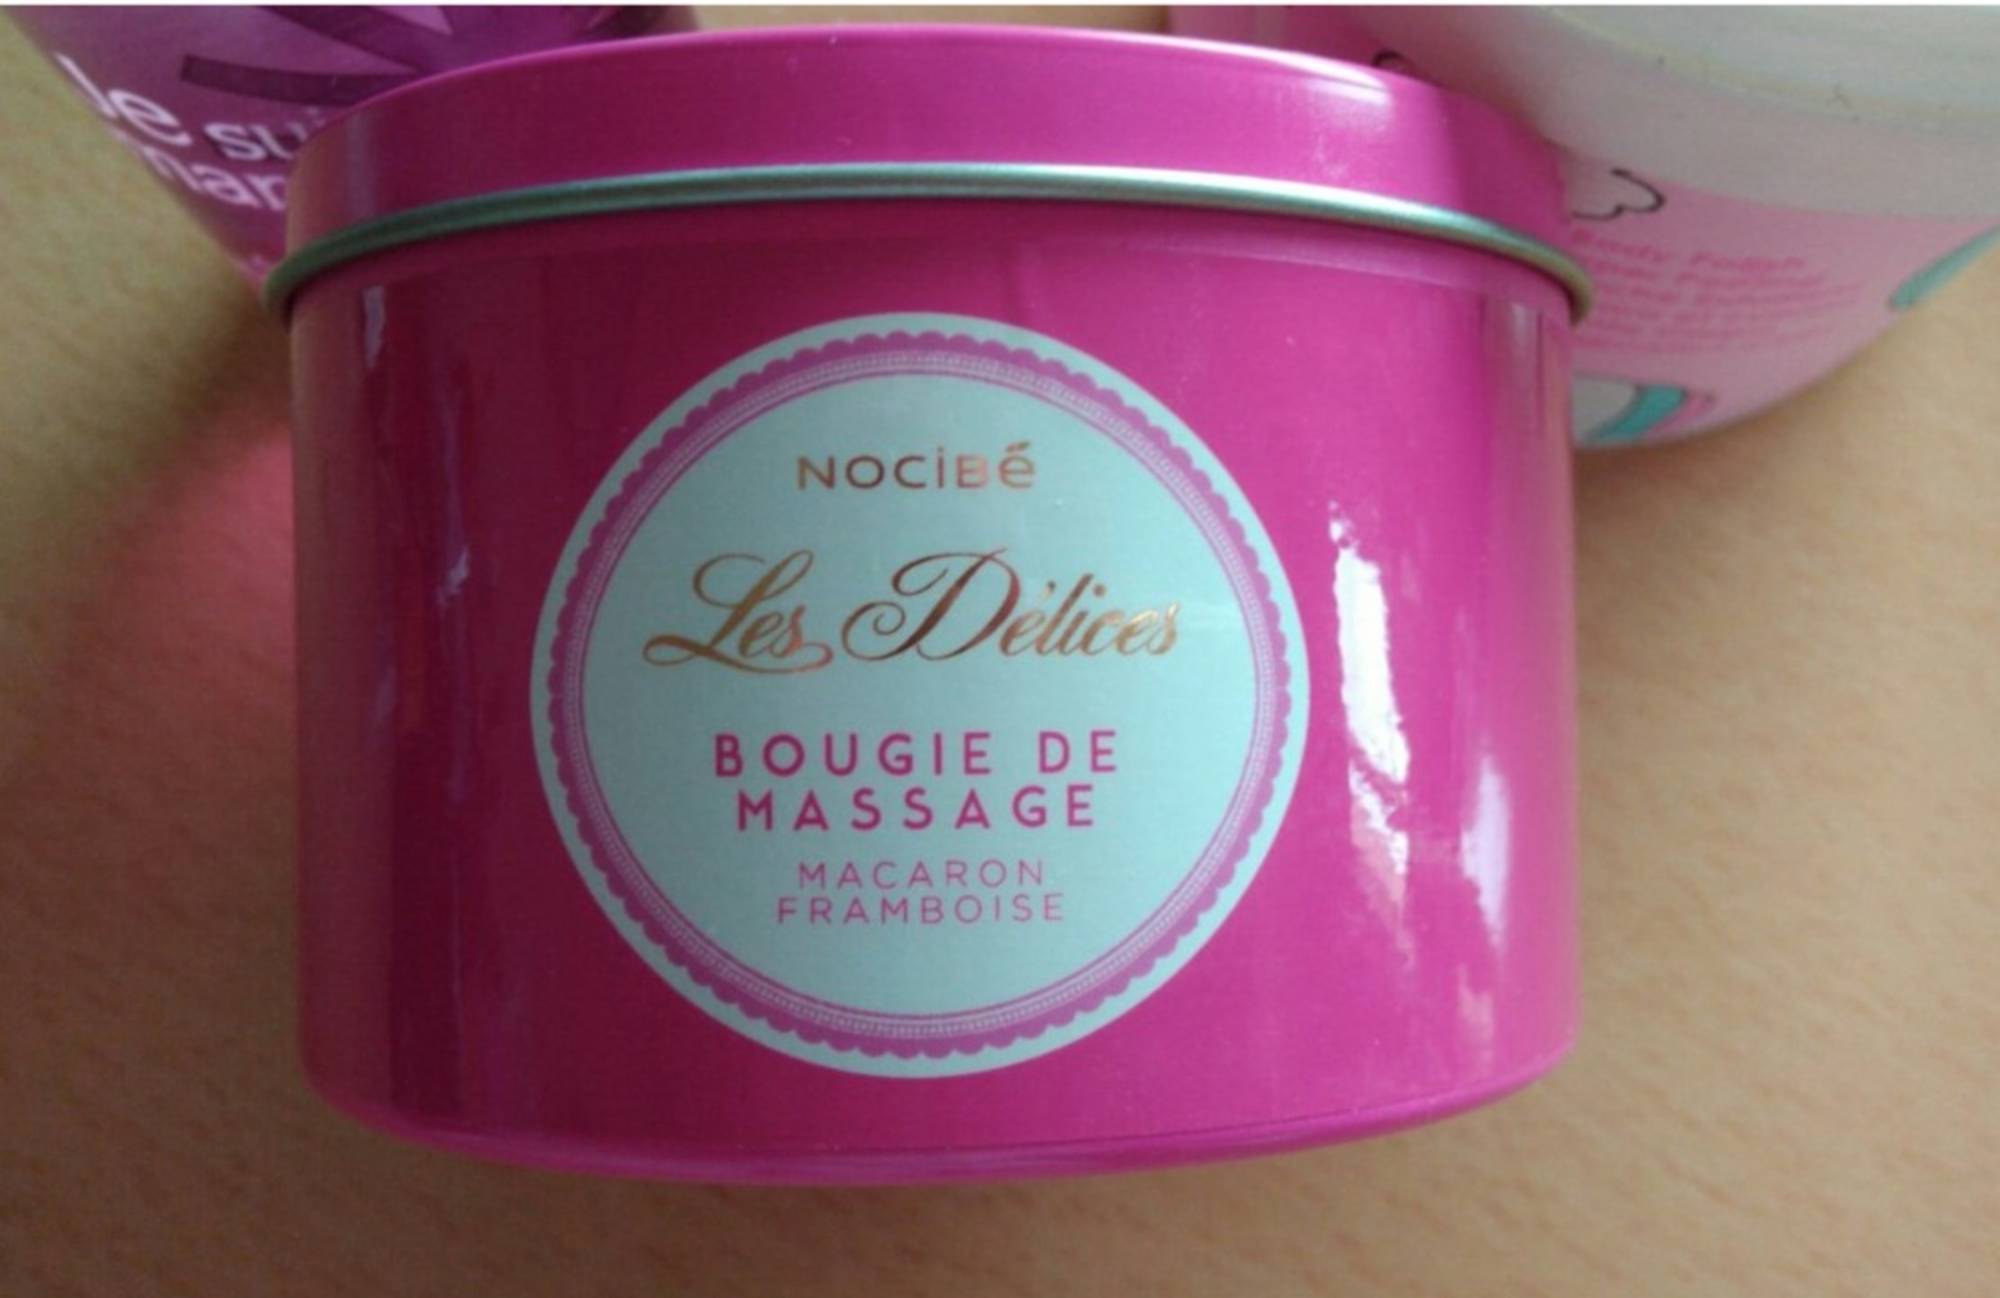 NOCIBÉ - Les délices - Bougie de massage